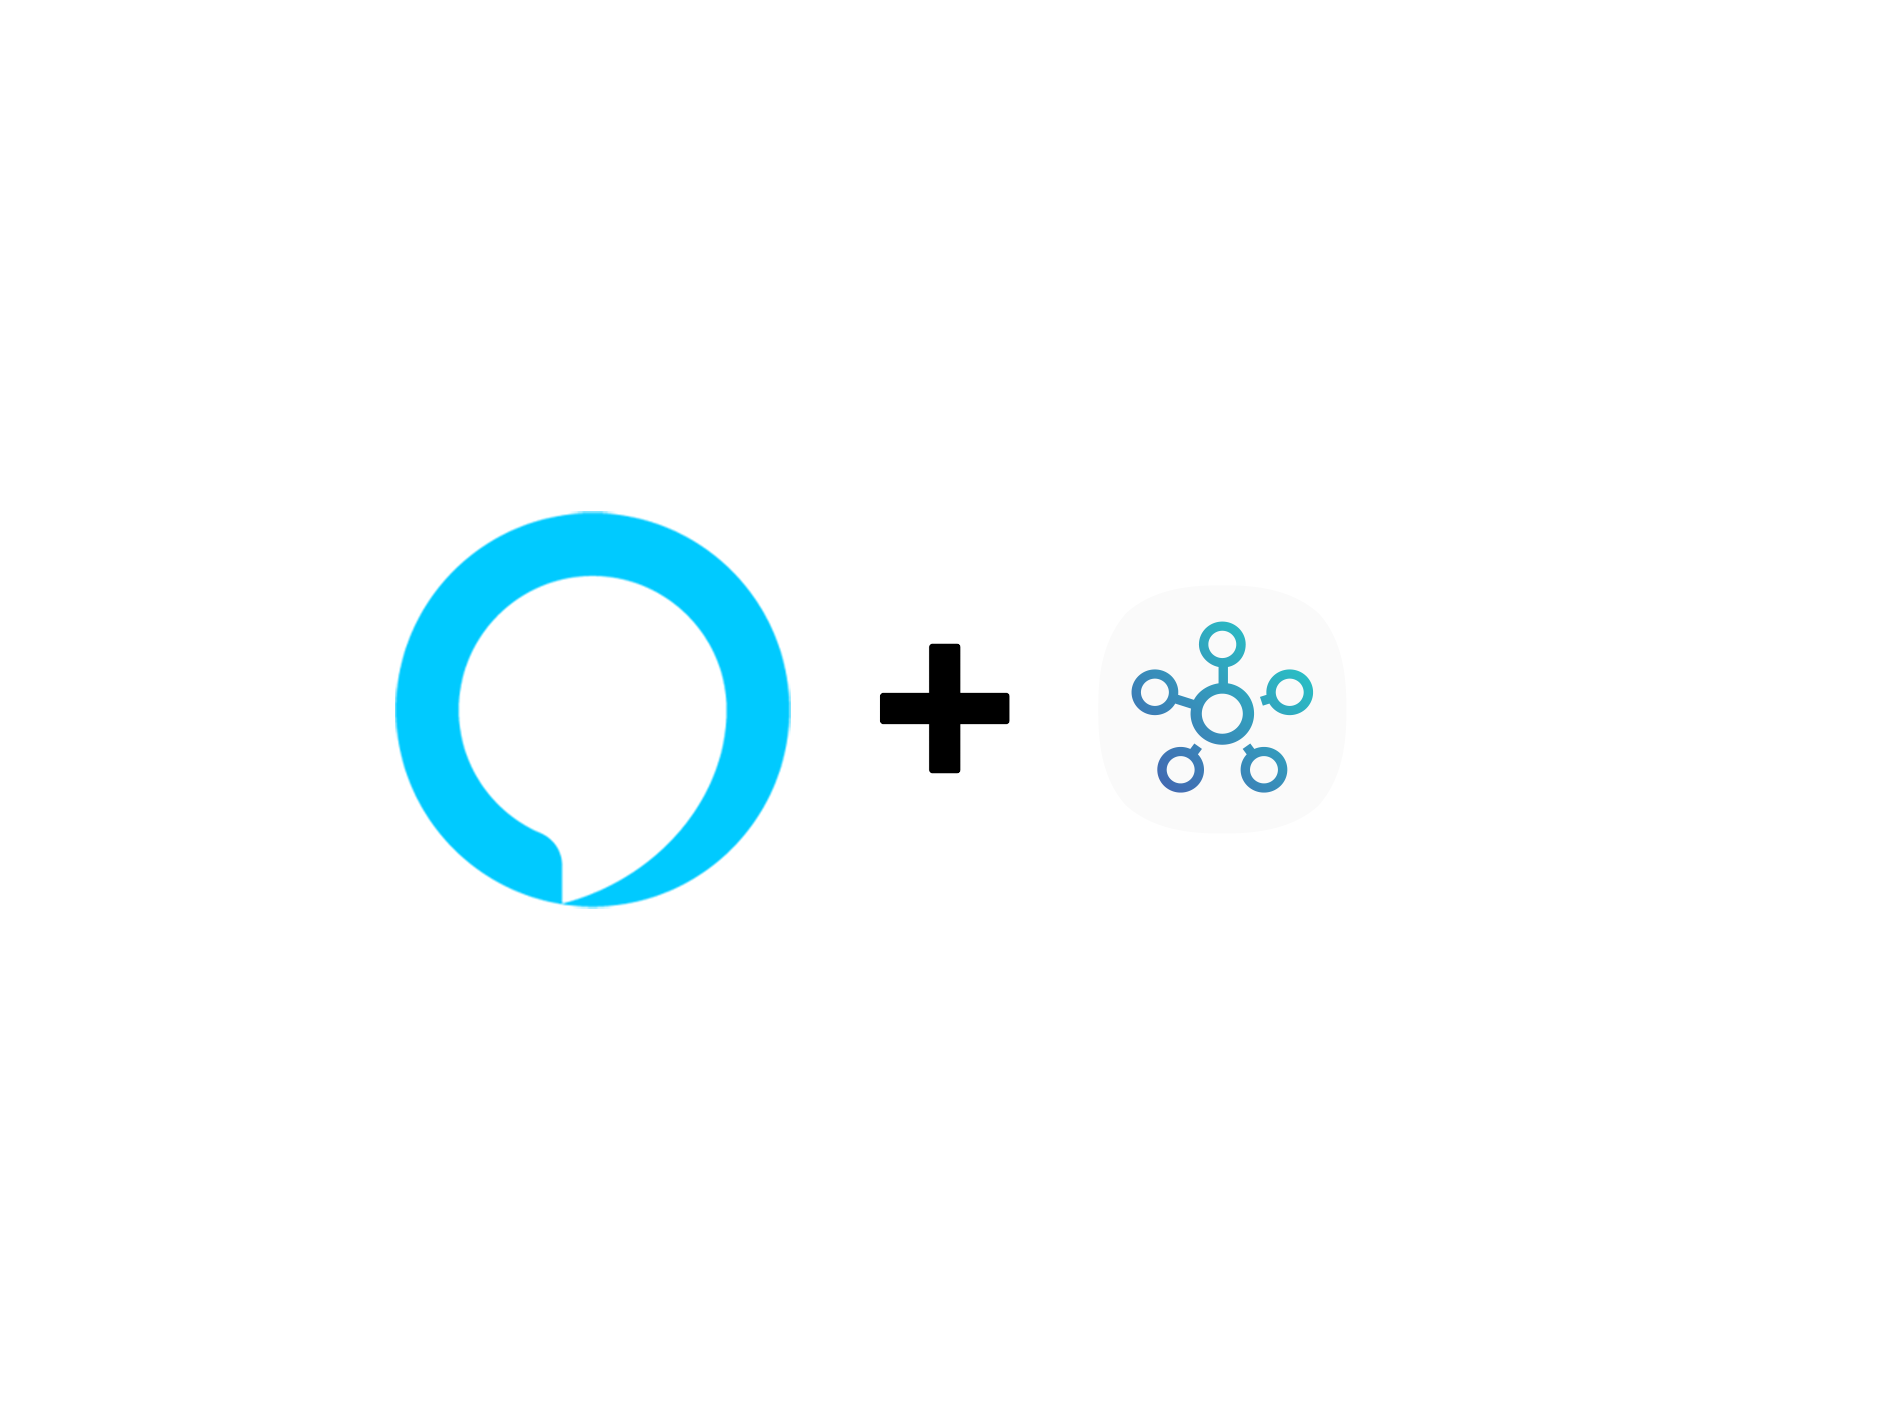 Alexa Logo, Plus symbol, and SmartThings Logo on White Background